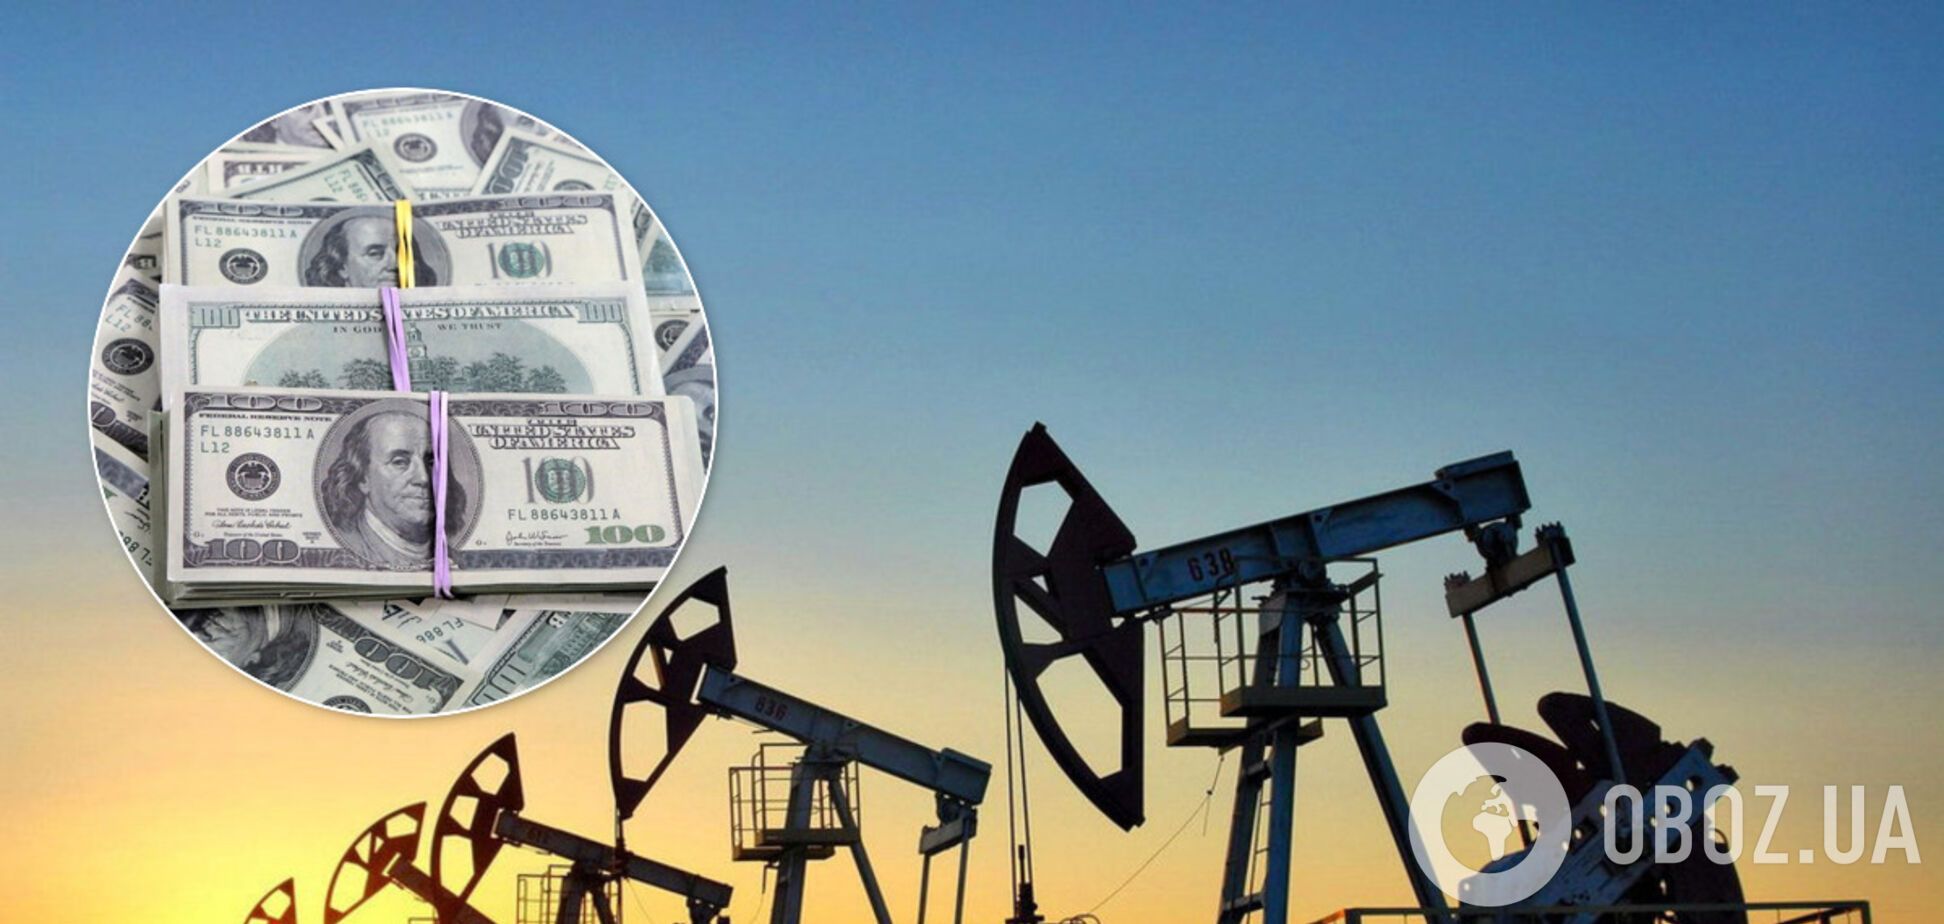 Ринок нафти готується до розпродажу через коронавірус: аналітик спрогнозував нову ціну